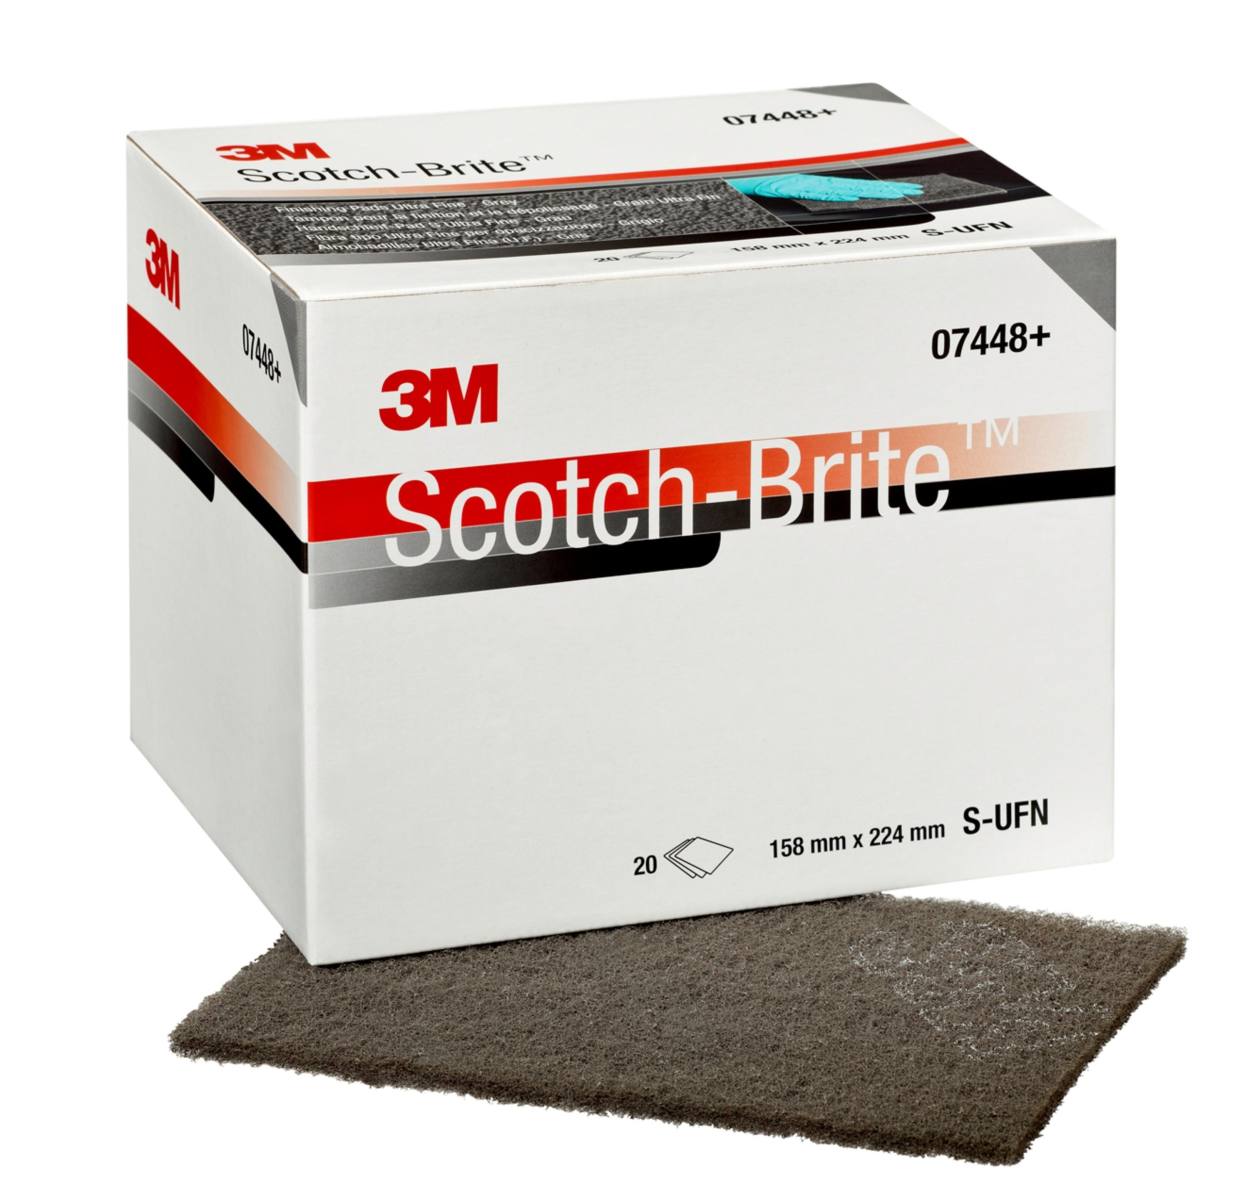 3M Scotch-Brite Handpad CF-HP 7448+, grau 158 mm x 224 mm, S, ultra fine